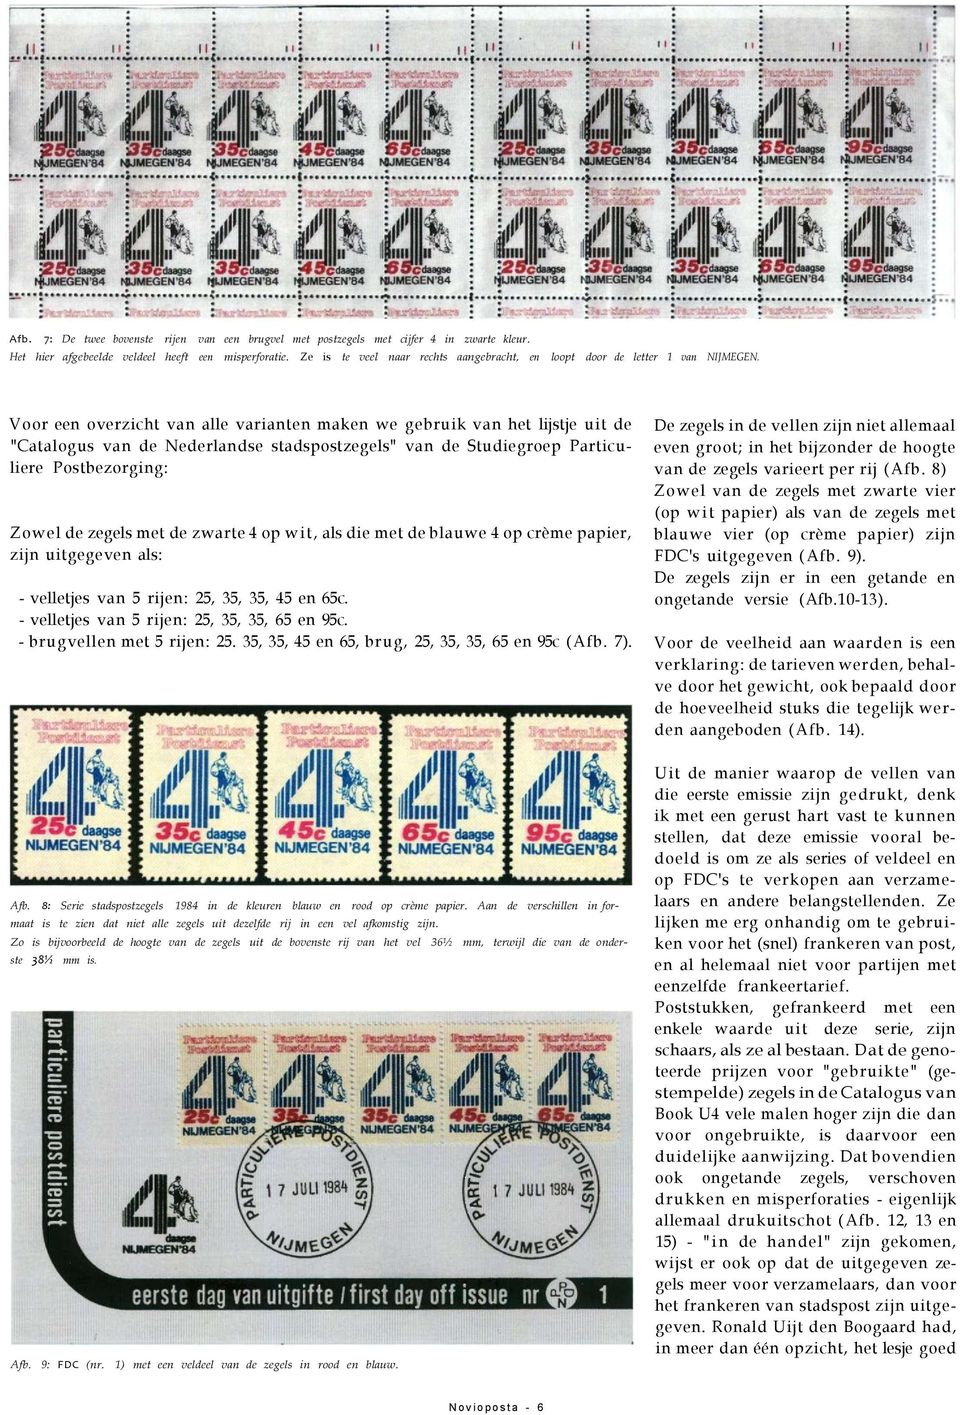 Voor een overzicht van alle varianten maken we gebruik van het lijstje uit de "Catalogus van de Nederlandse stadspostzegels" van de Studiegroep Particuliere Postbezorging: Zowel de zegels met de